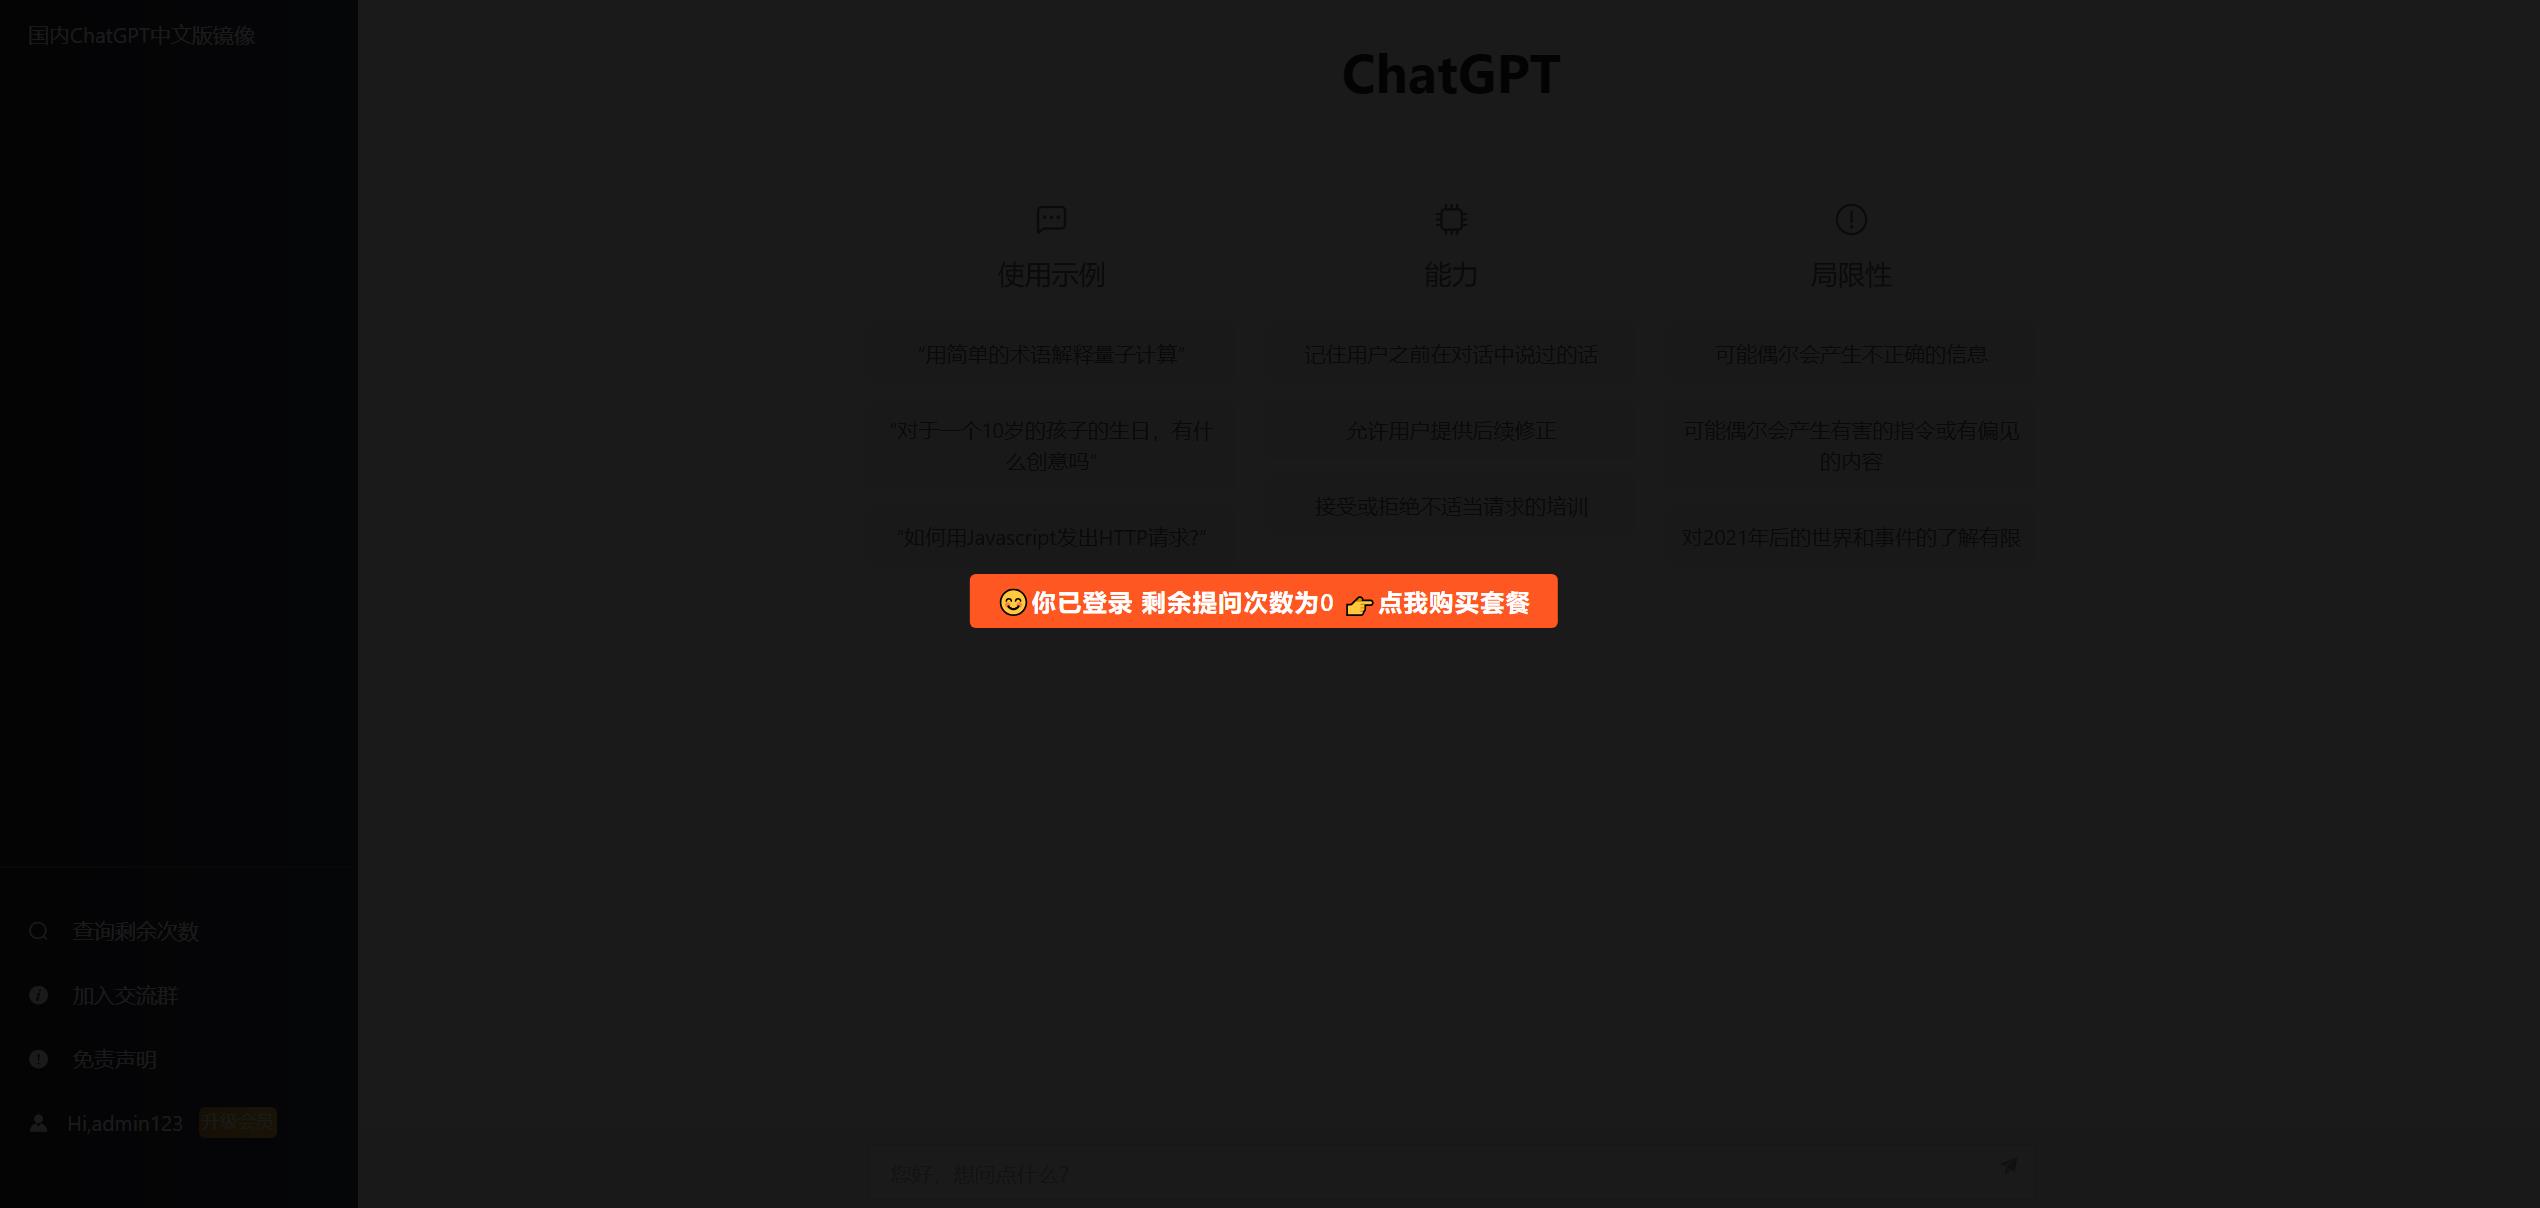 2023最新ChatGPT网站源码发布 支持用户付费套餐并能够赚取收益